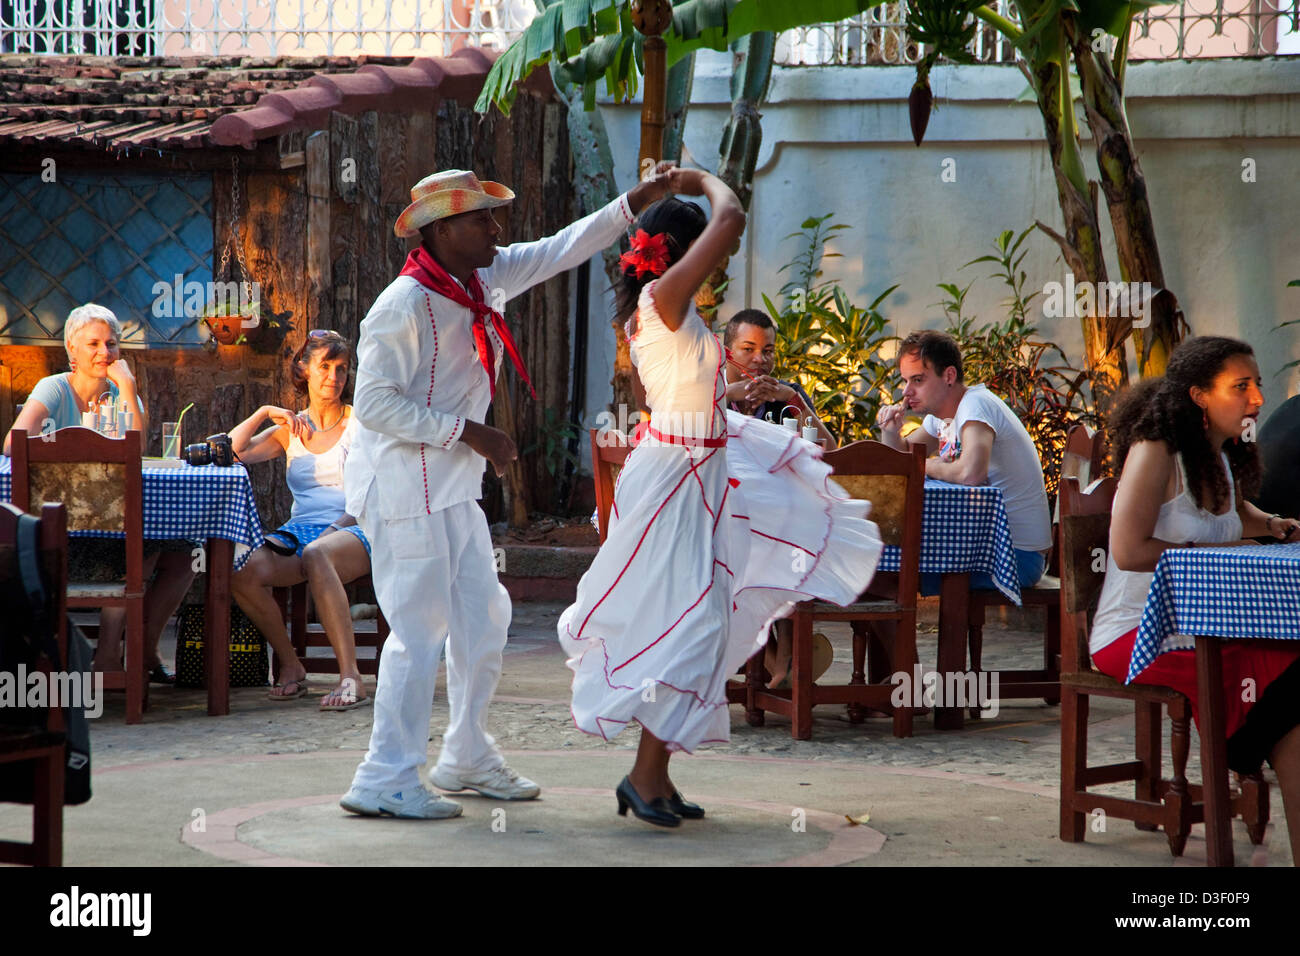 Coppia cubana balli in stile spagnolo per i turisti in un bar all'aperto in Trinidad, Cuba Foto Stock